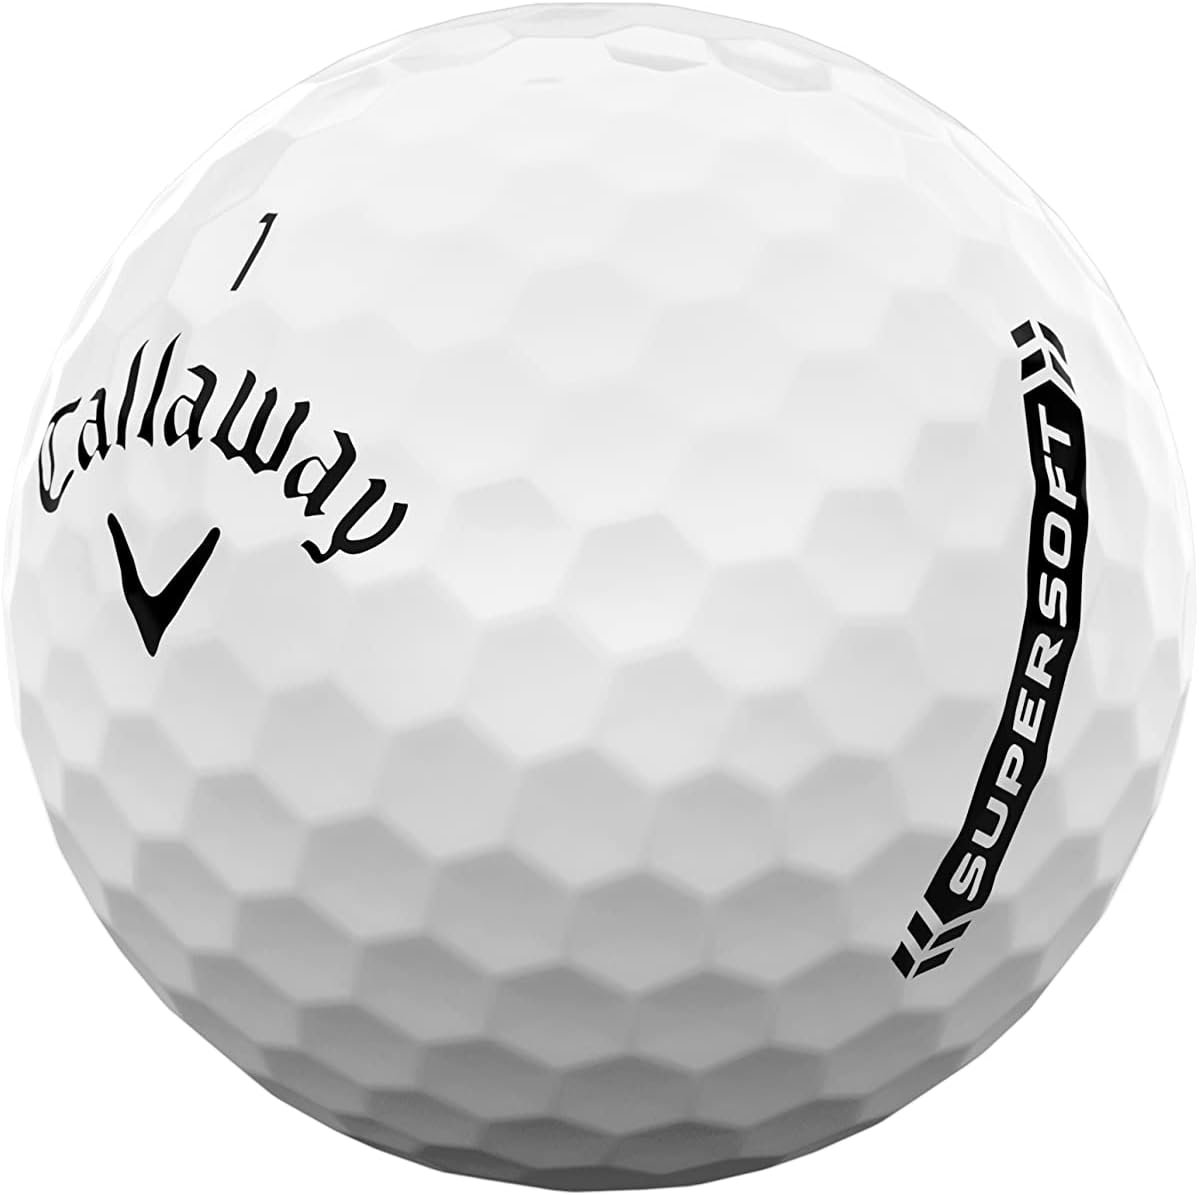 Golf Balls Review: Srixon, Callaway, and Titleist